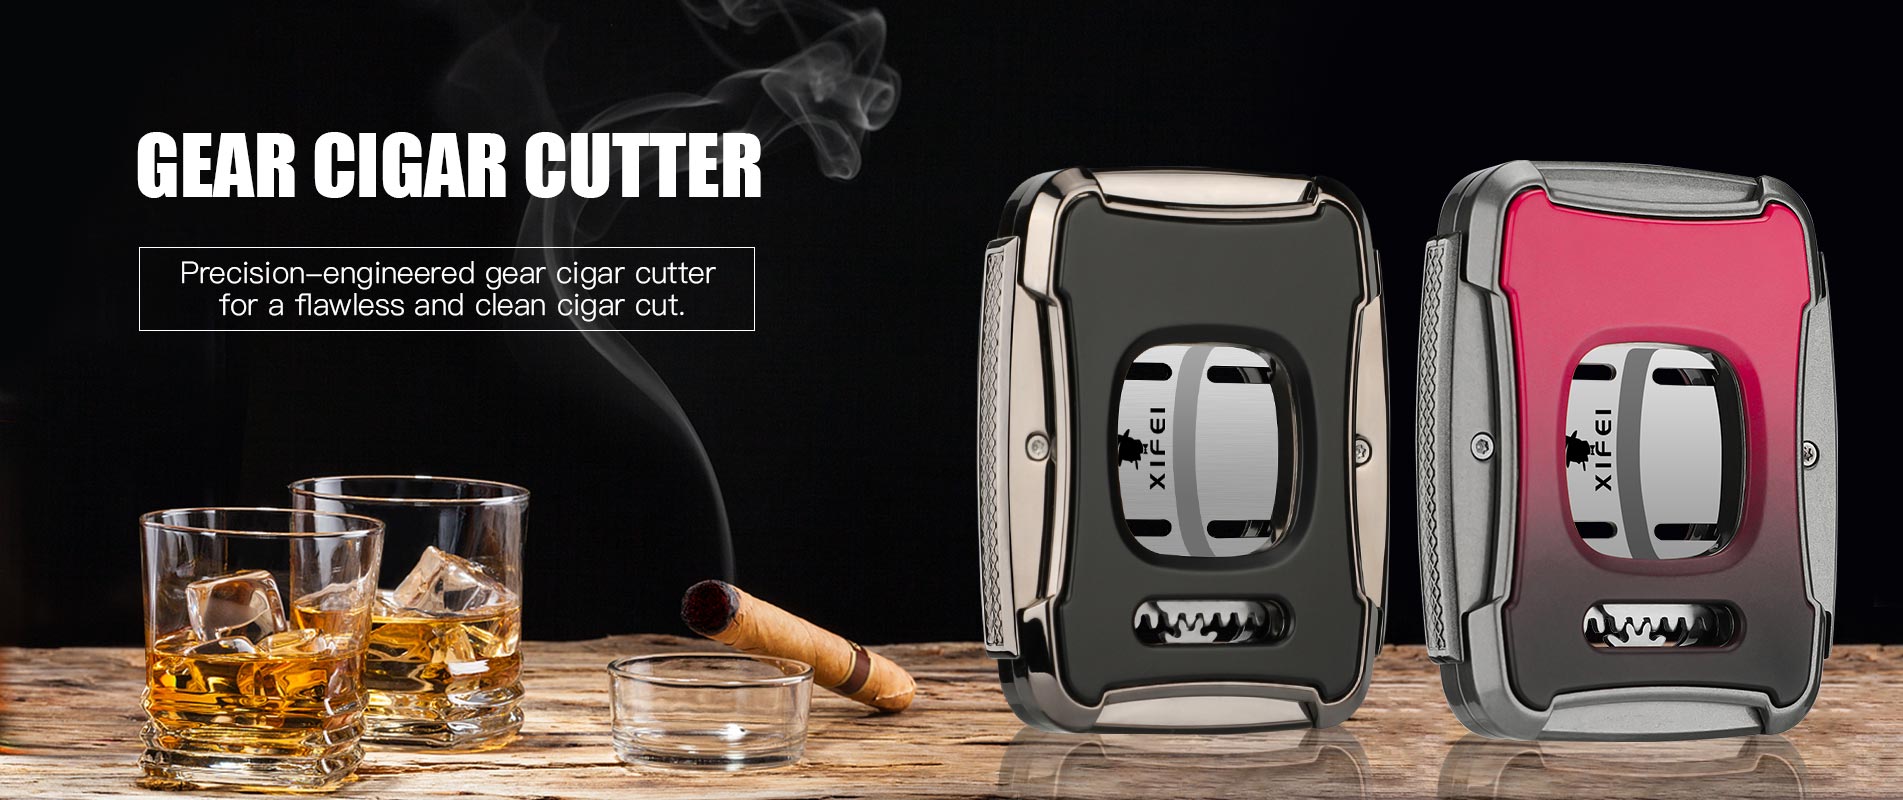 Cigar Cutters